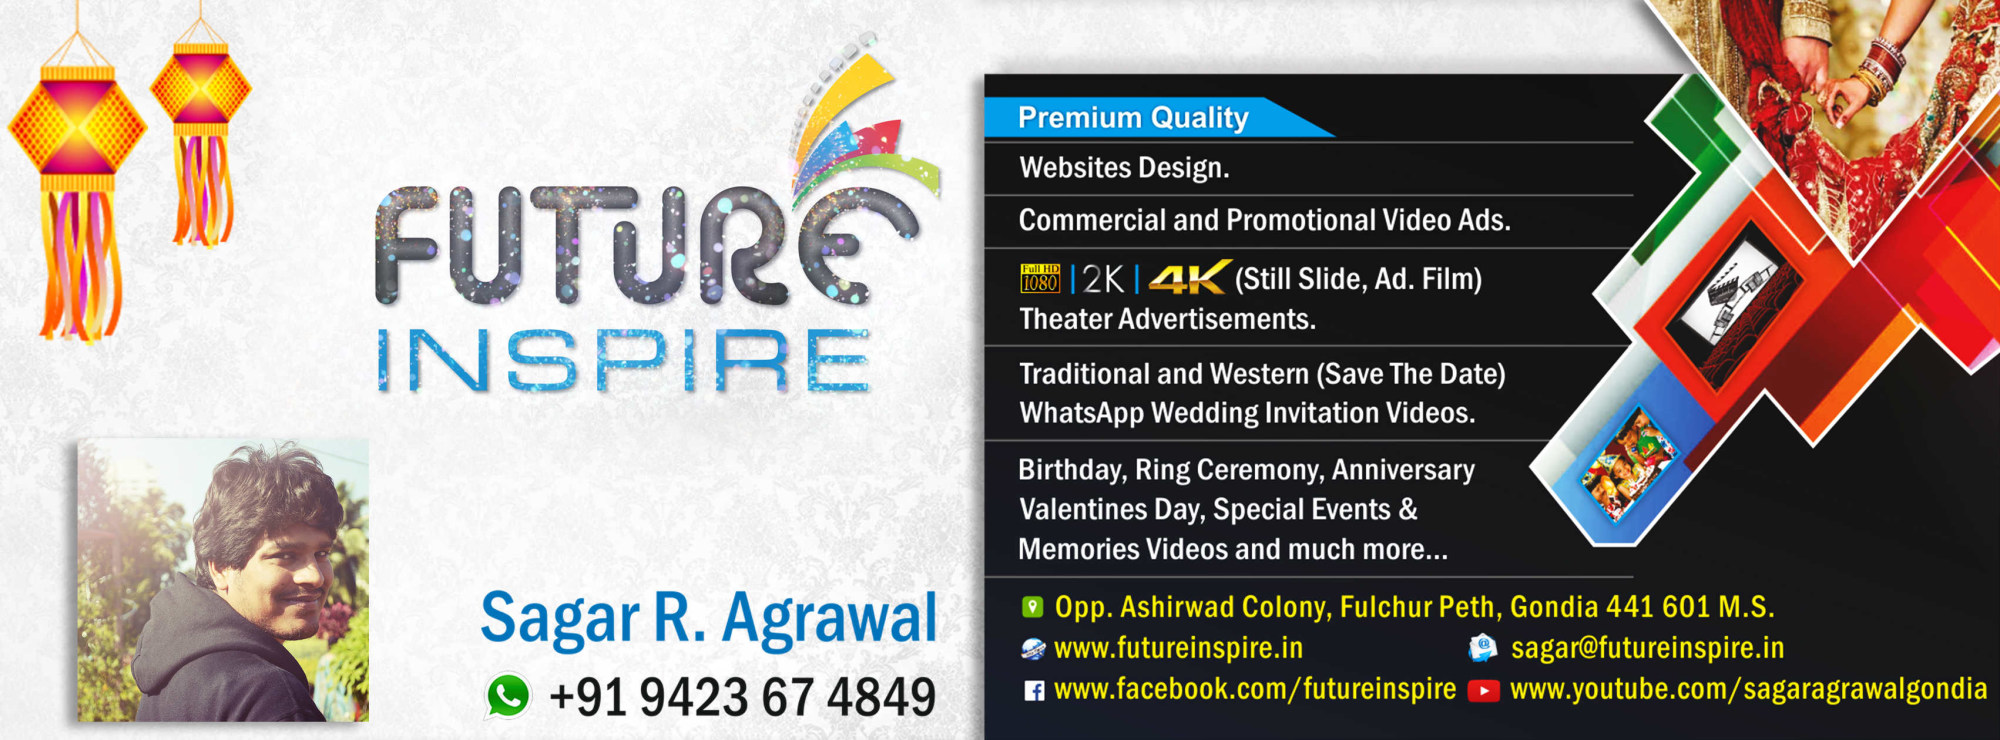 FUTURE INSPIRE Sagar R. Agrawal